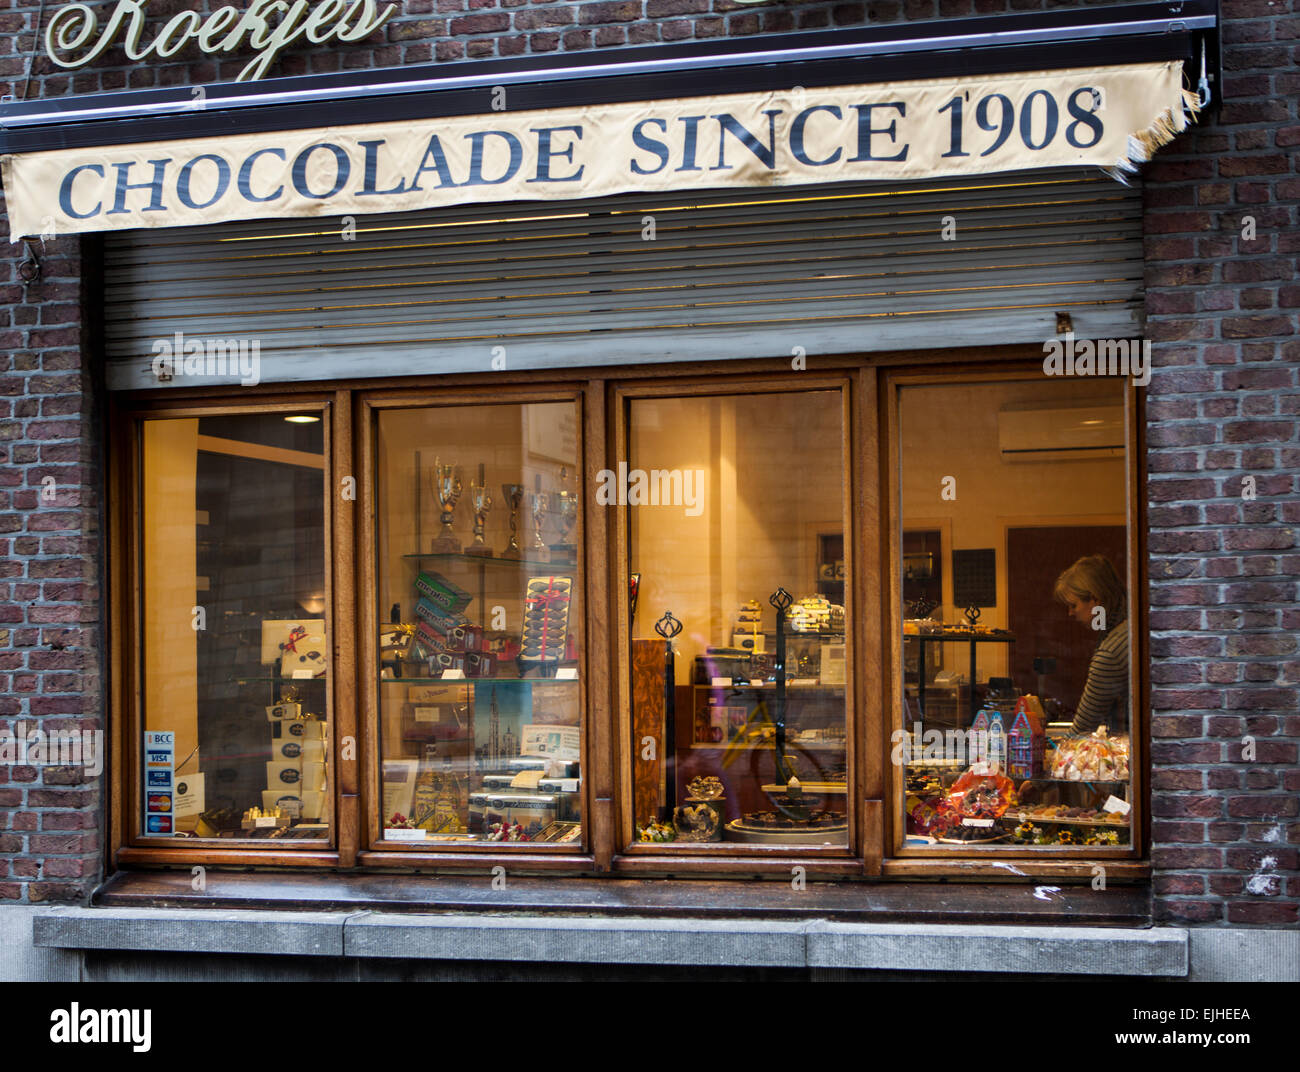 Vitrine chocolat, Anvers, Belgique Photo Stock - Alamy